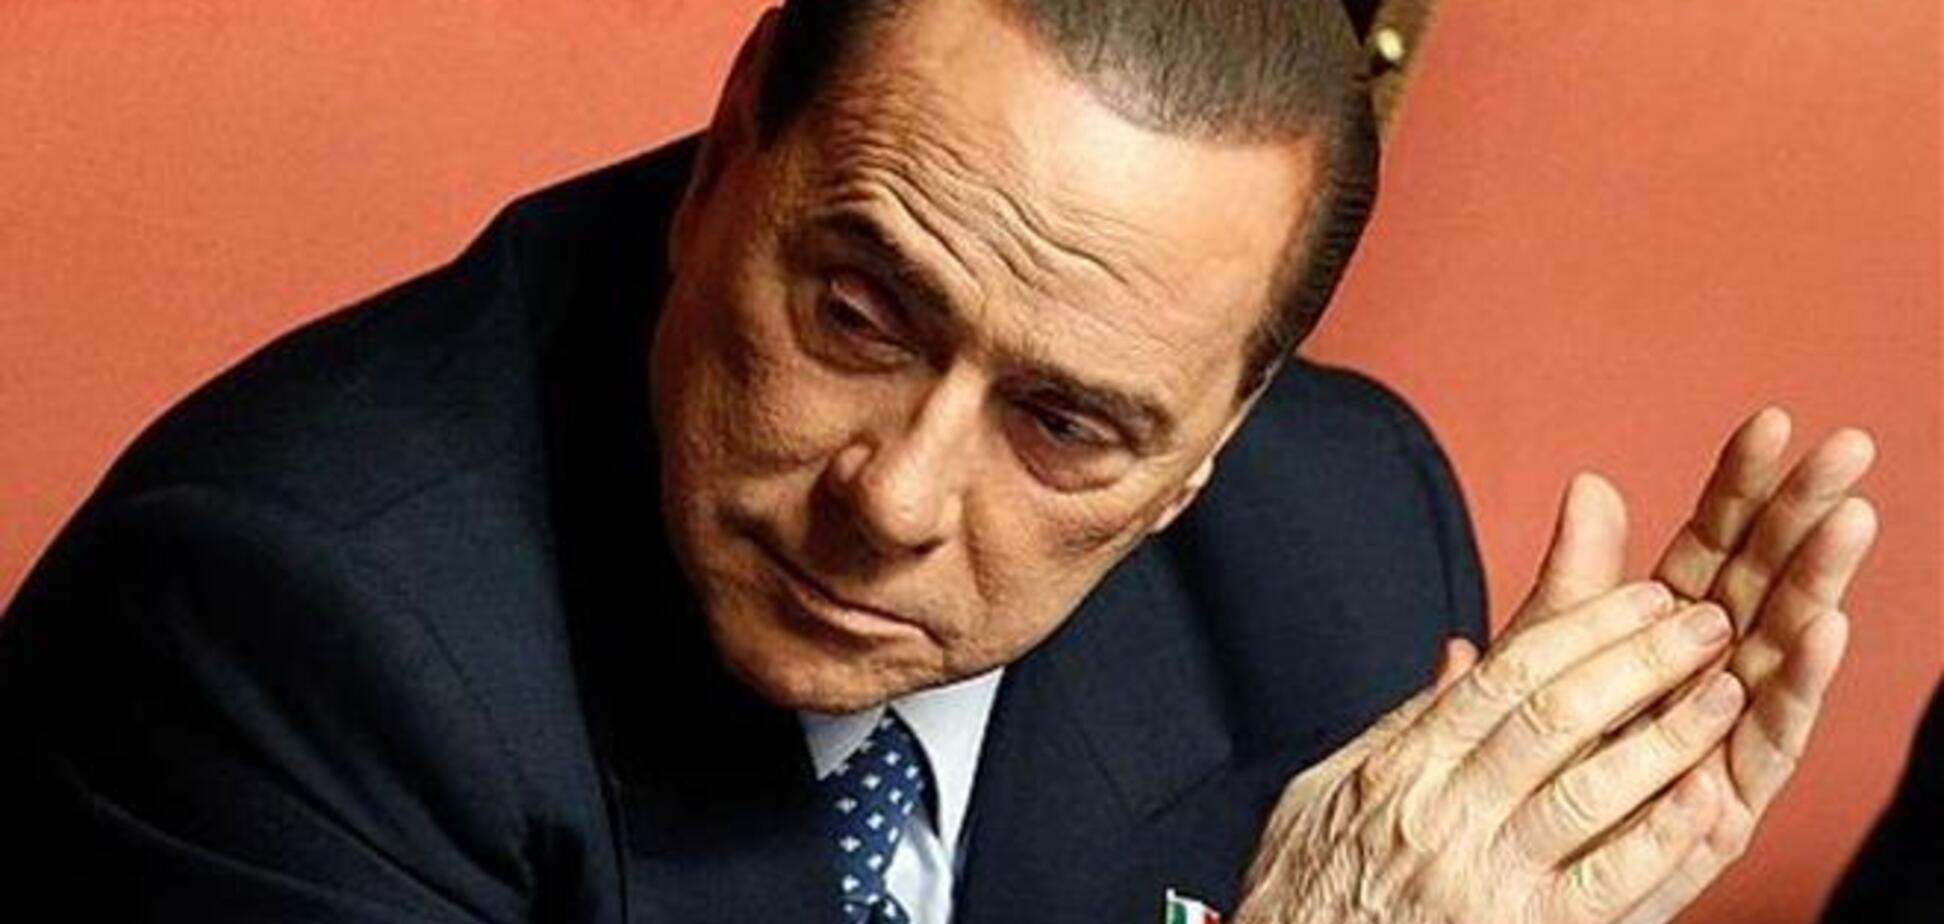 ЗМІ назвали дату остаточного вироку Берлусконі у справі Mediaset